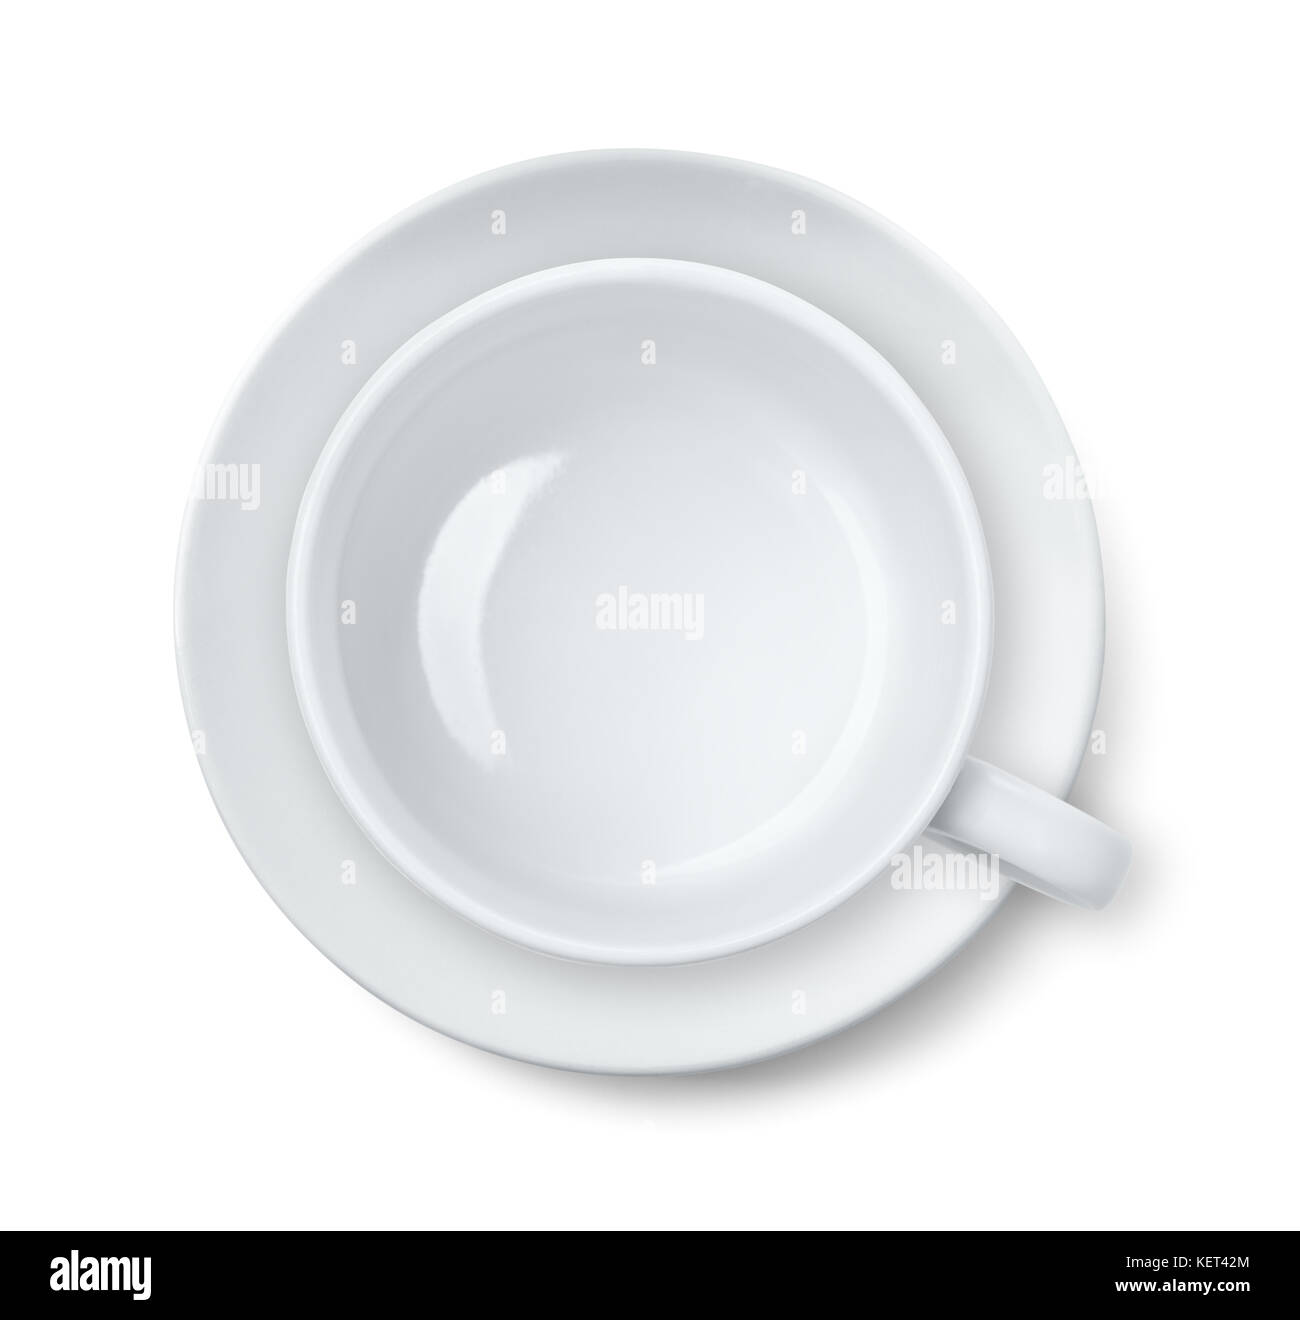 Vue de dessus du vide tasse à café et soucoupe isolated on white Banque D'Images